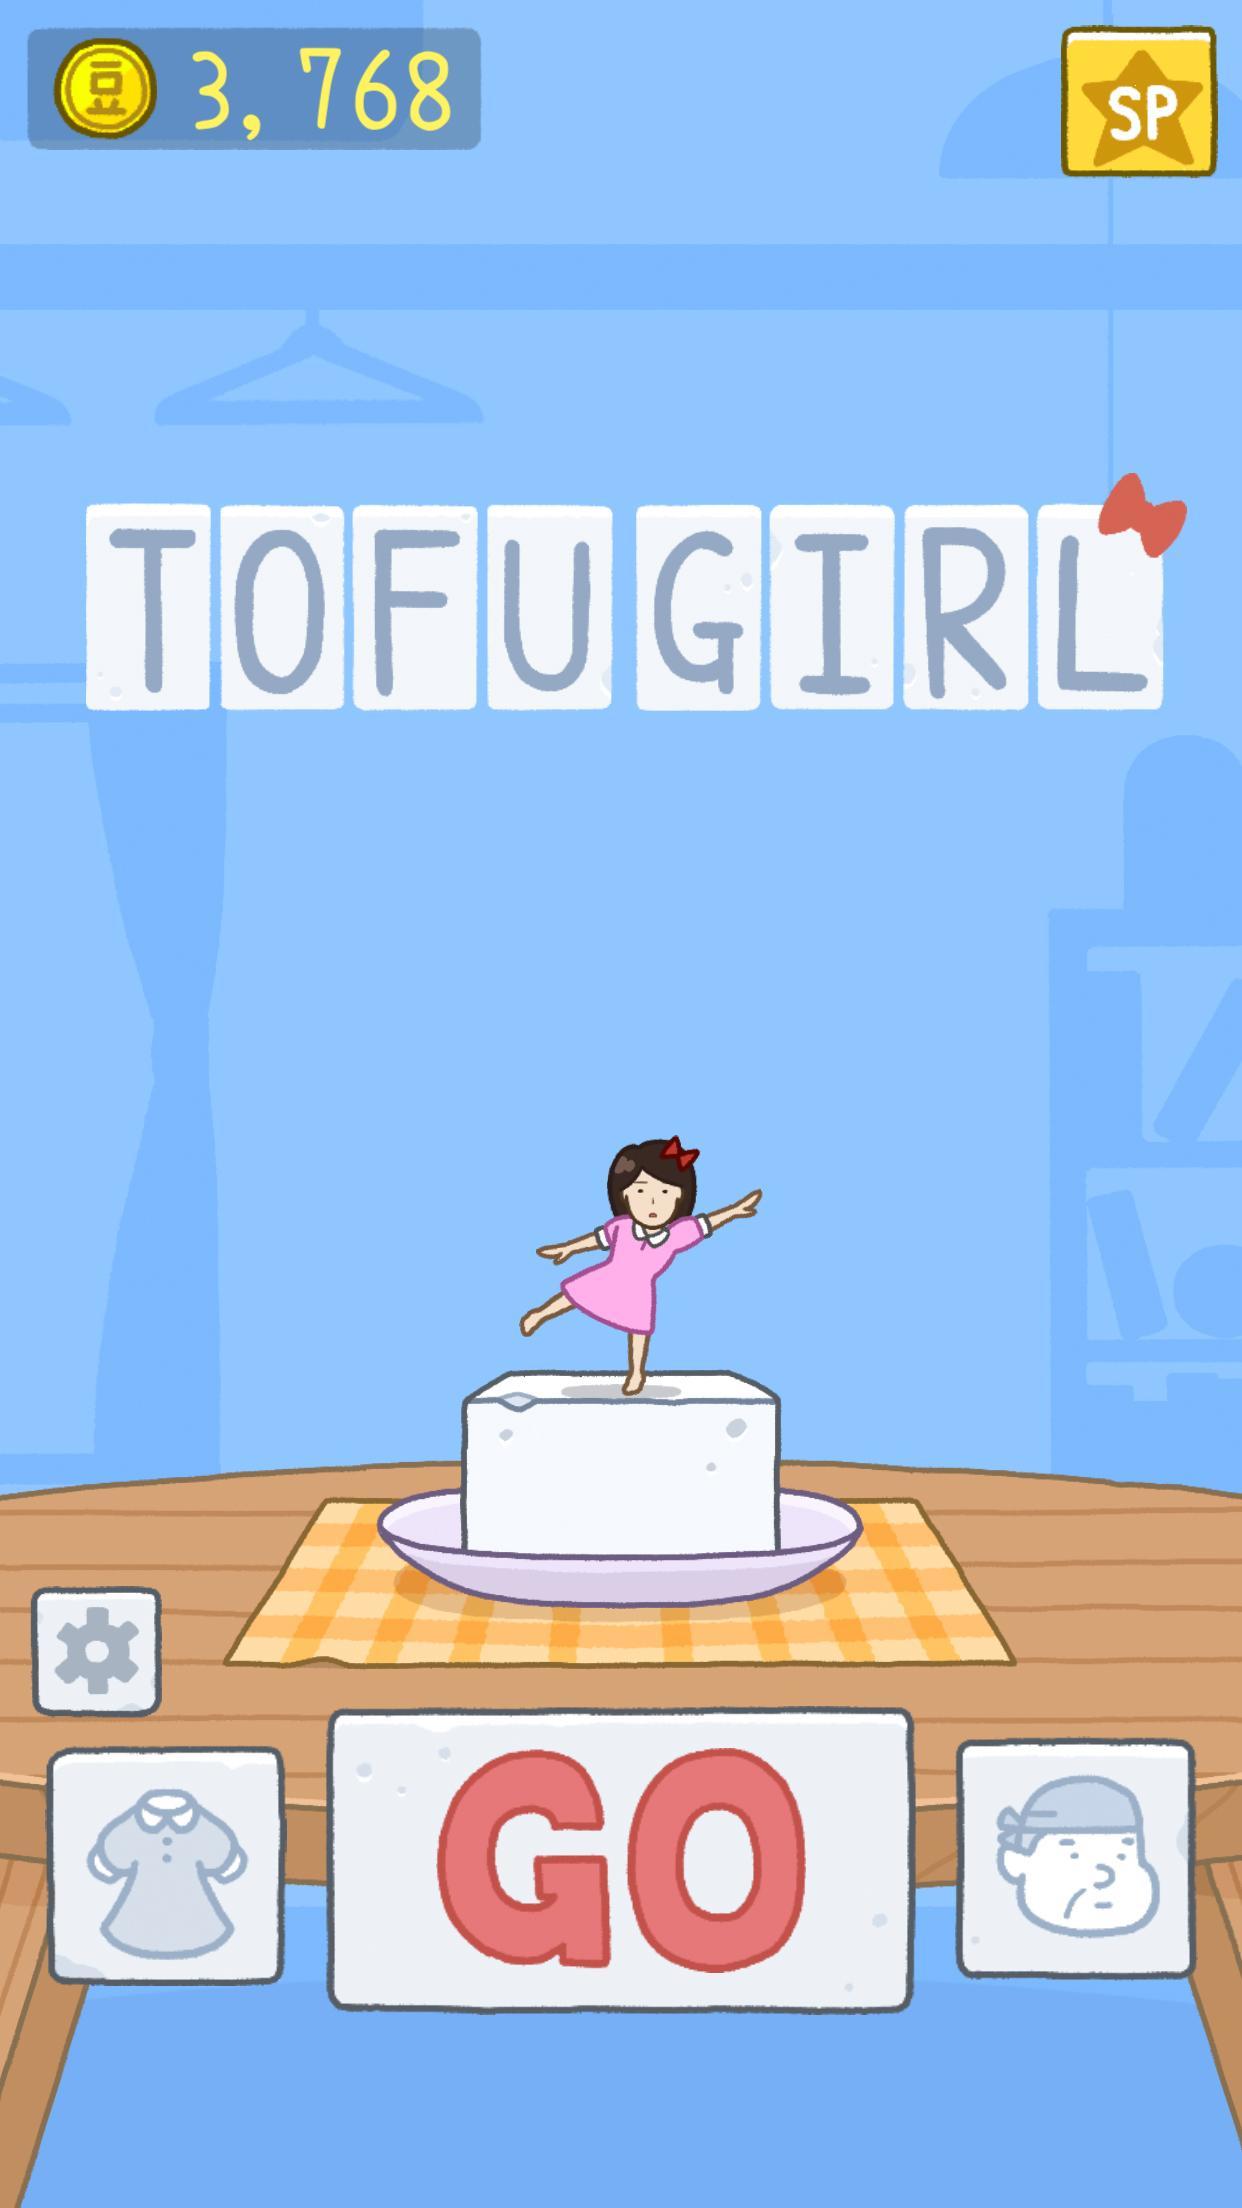 Screenshot 1 of La ragazza del tofu 1.1.64